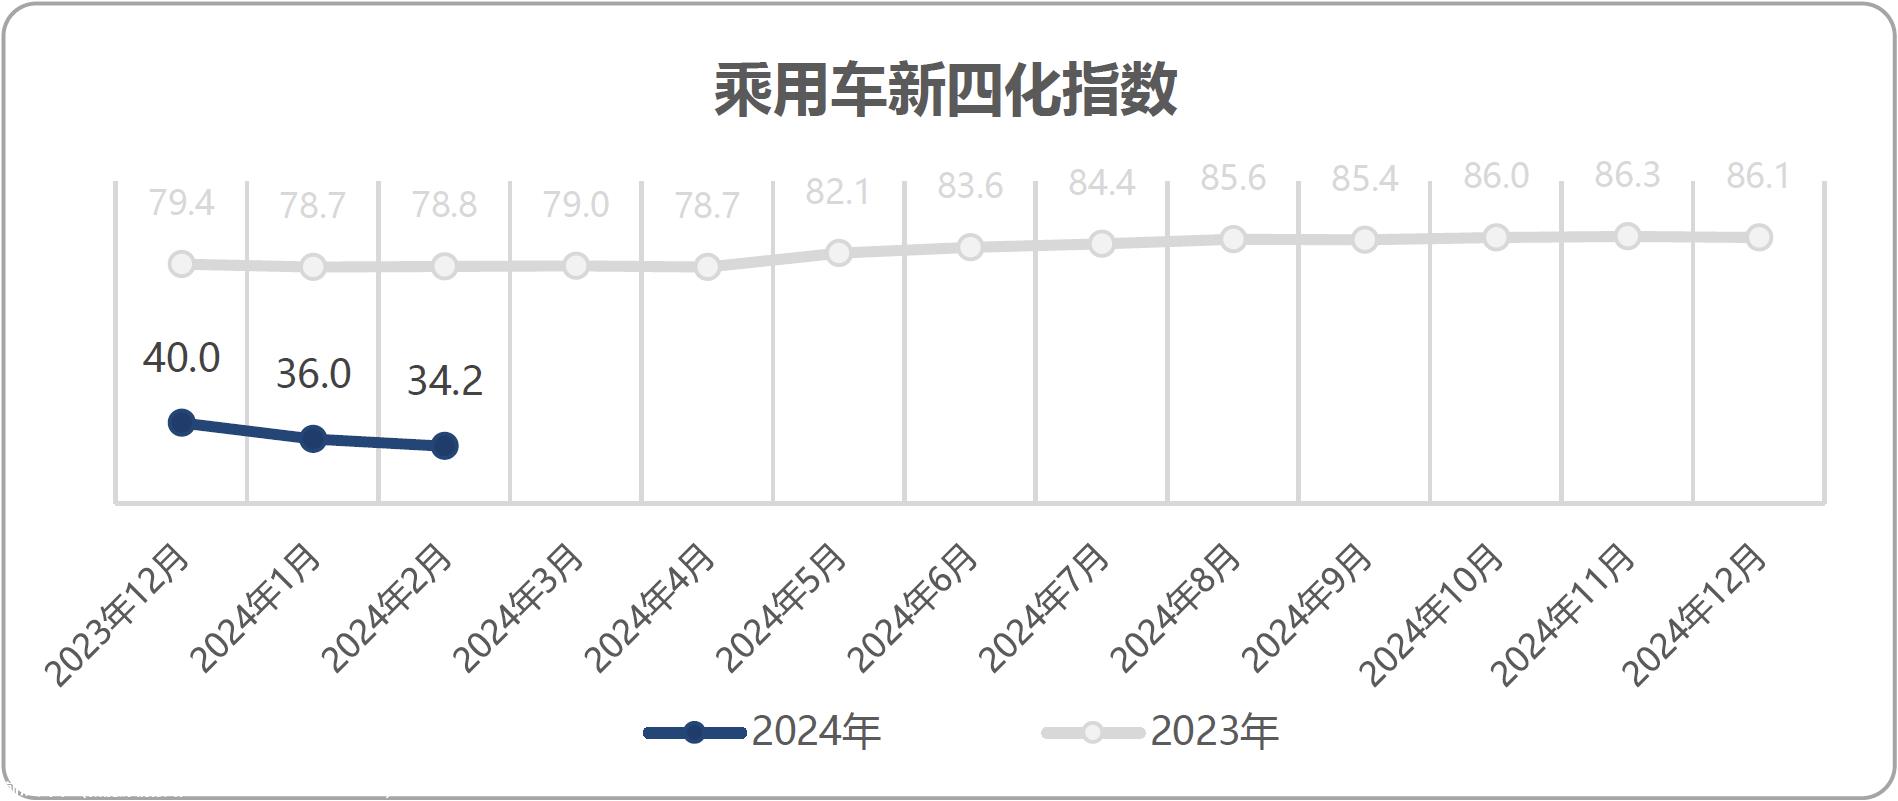 【联合发布】2024年1月乘用车新四化指数为34.2